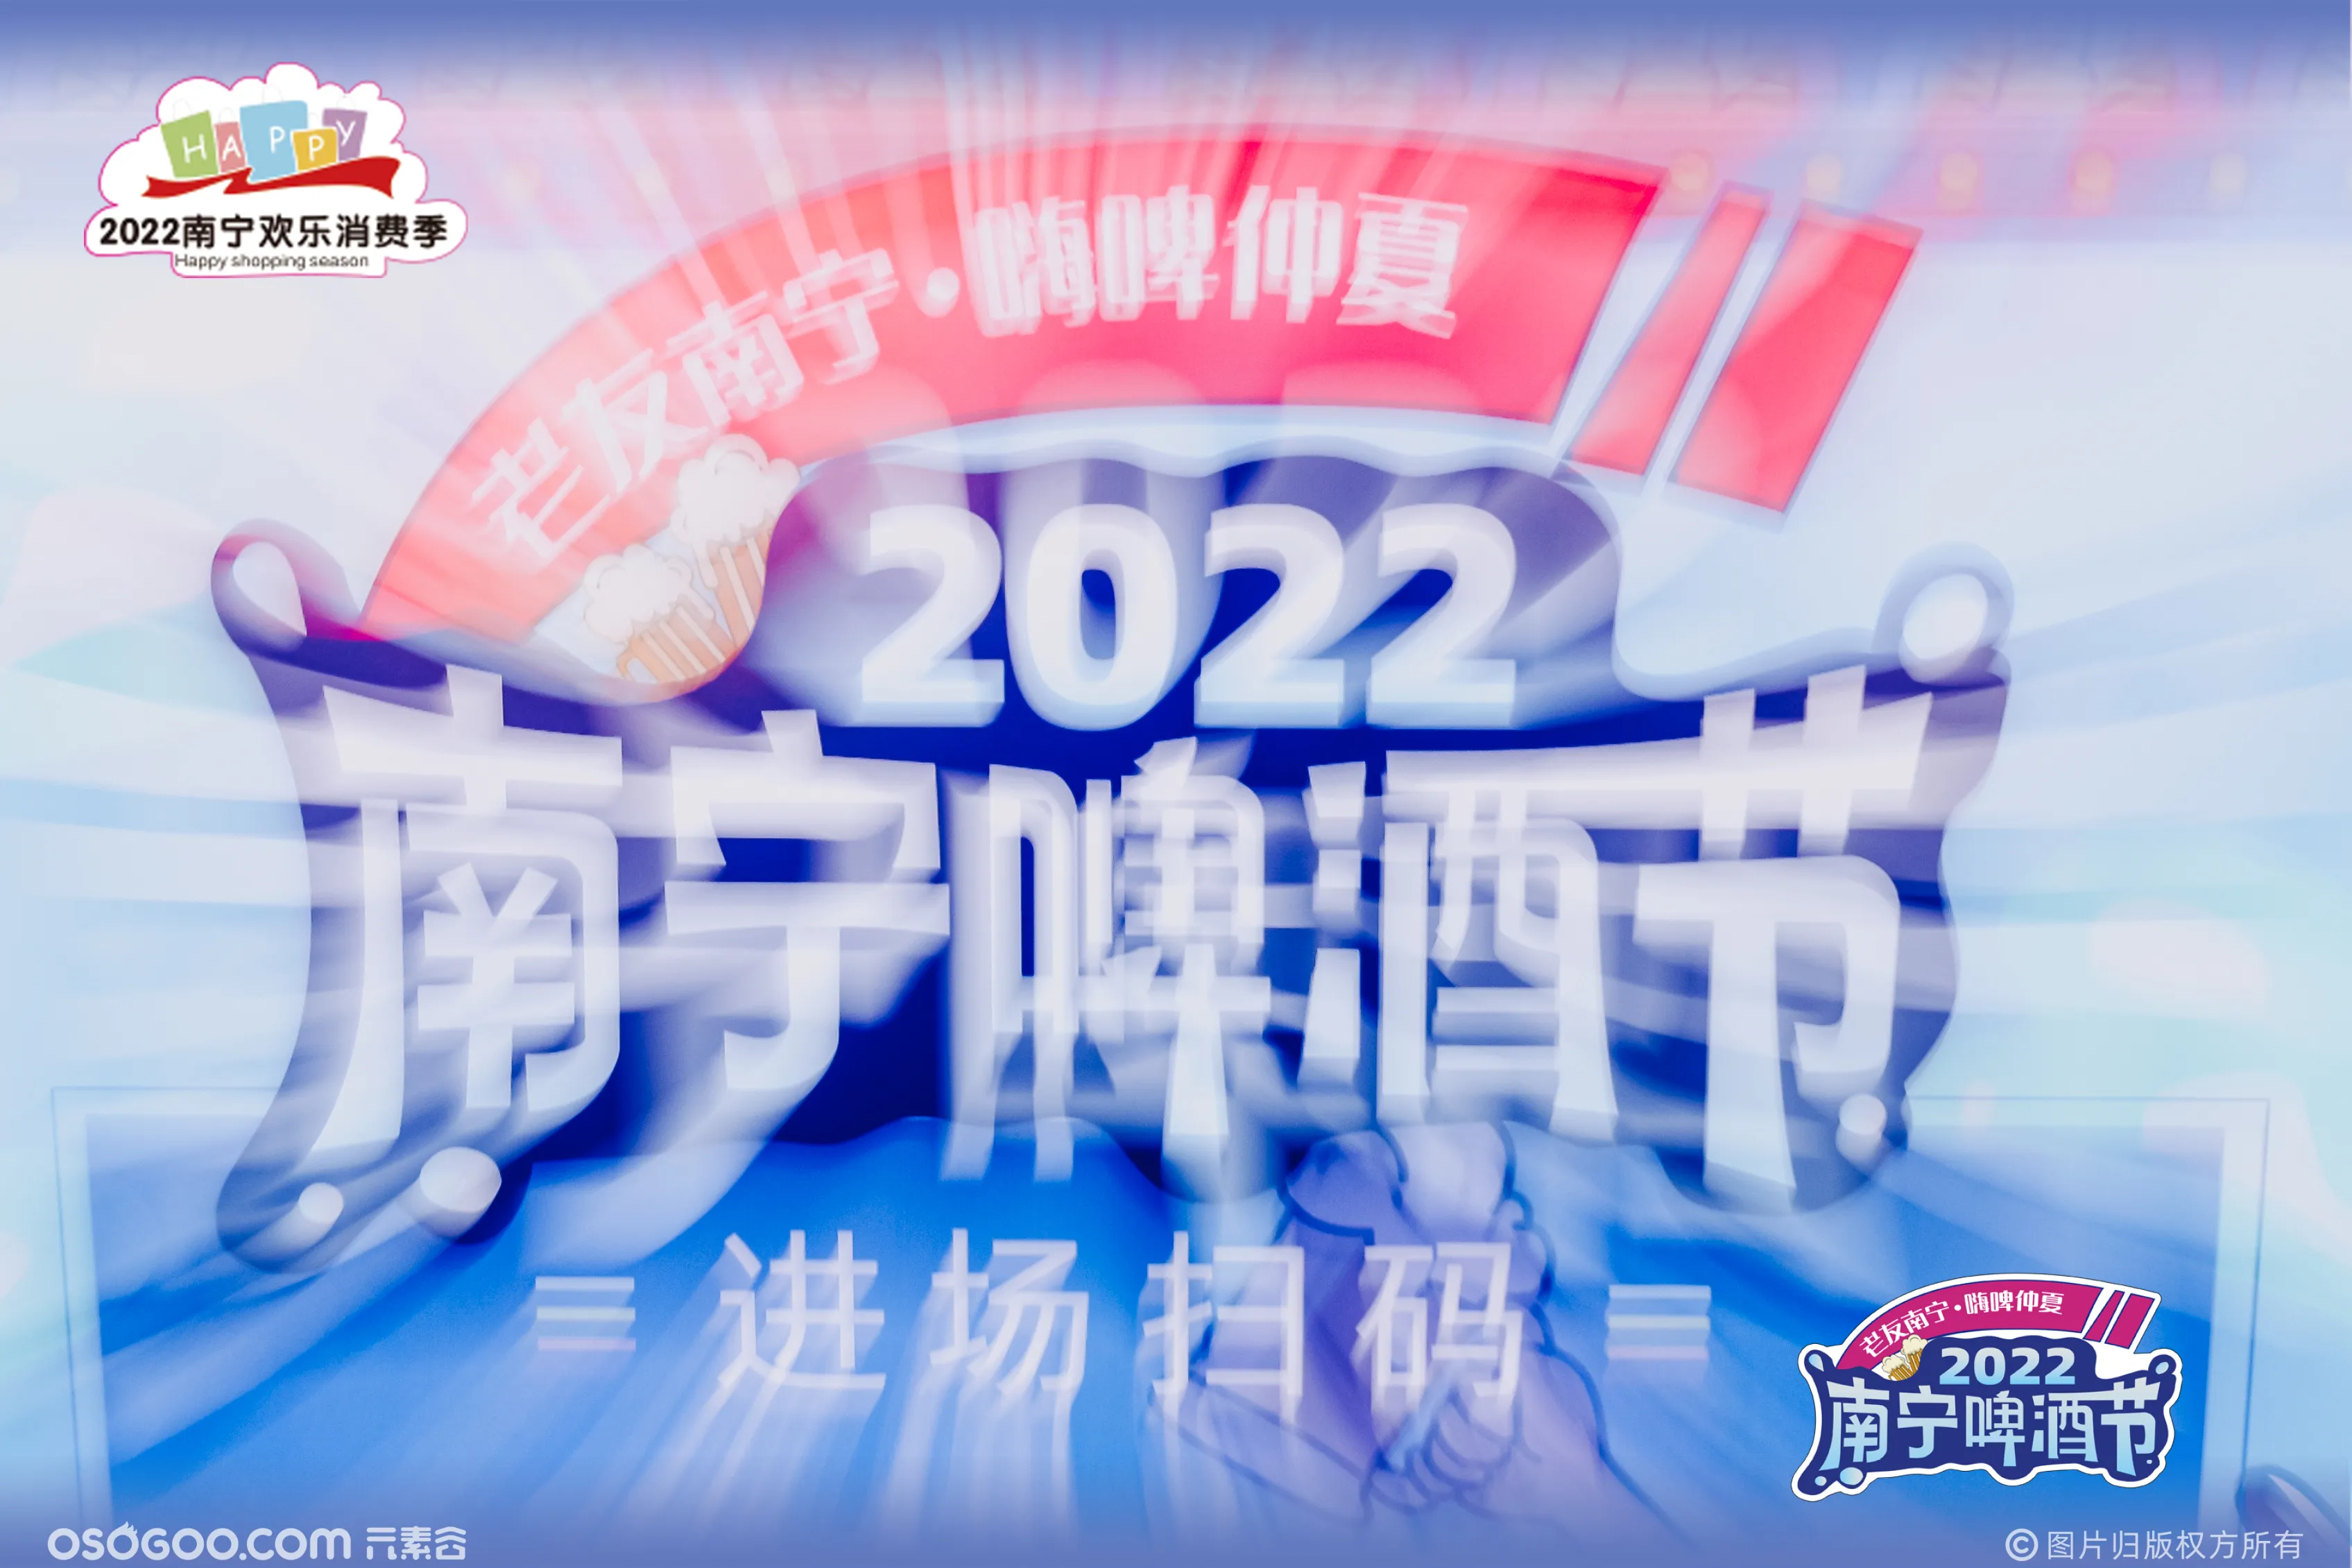 2022南宁啤酒节 | 老友南宁 嗨啤仲夏 